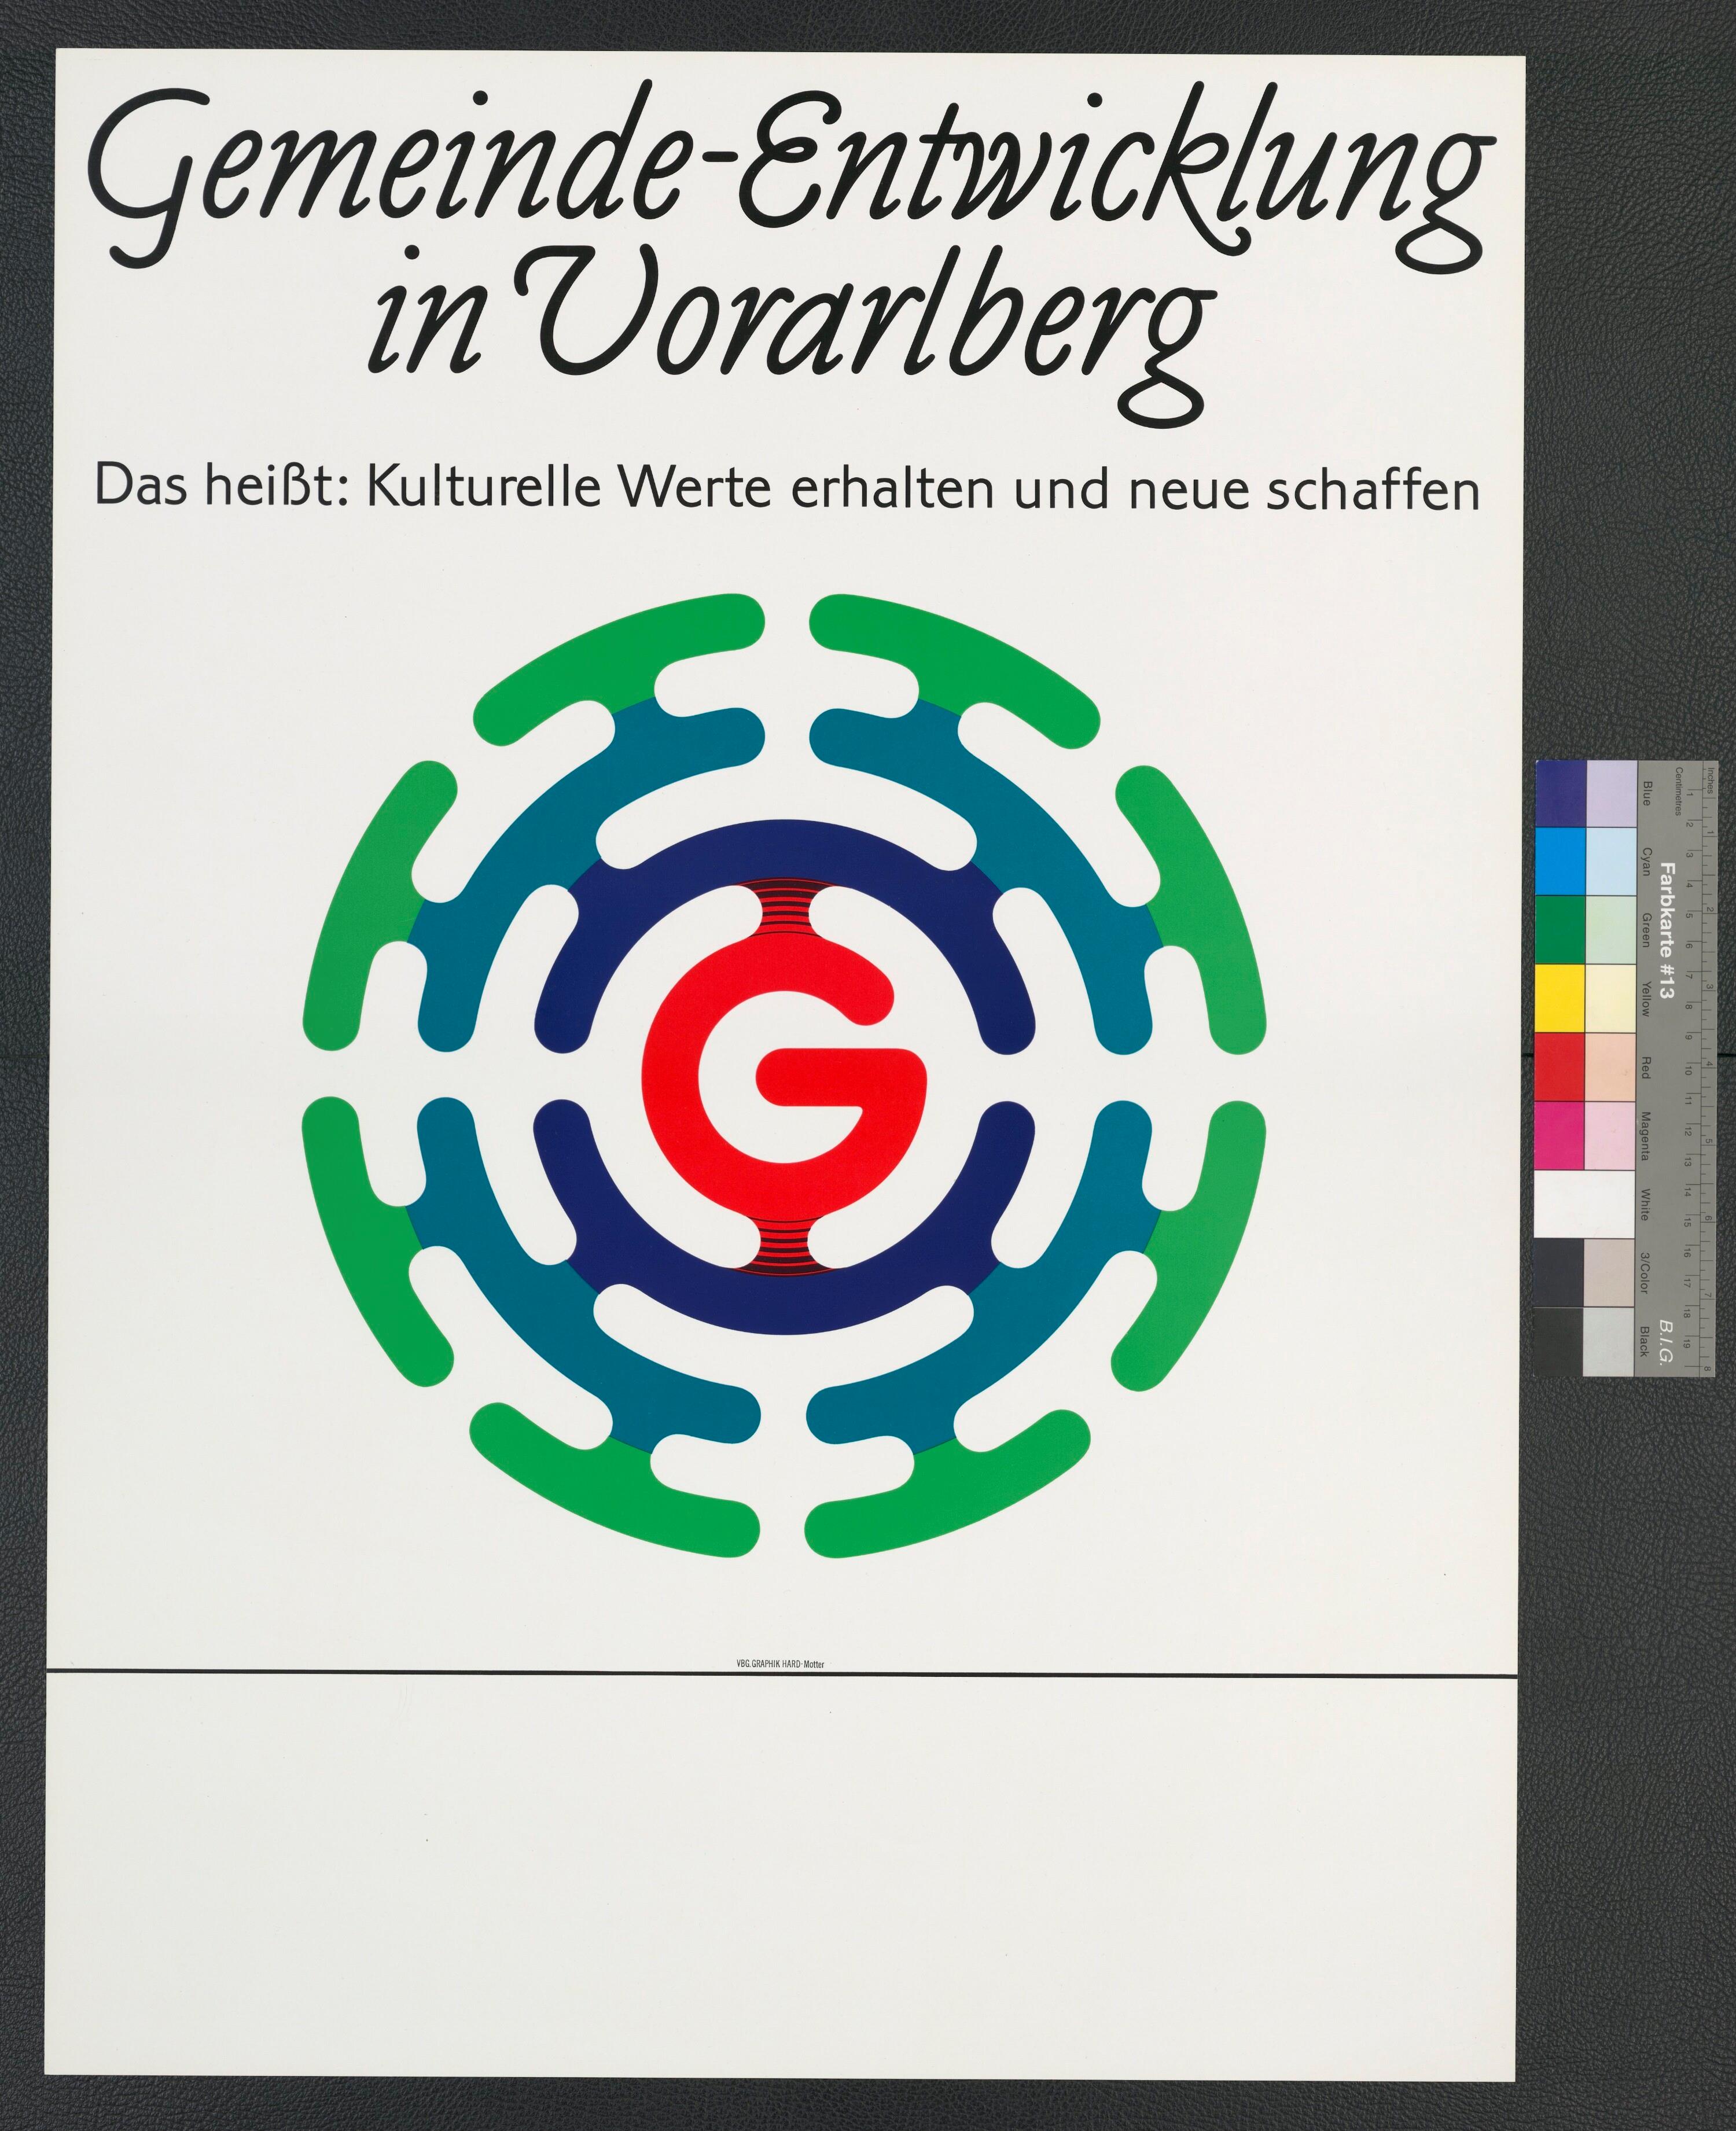 Plakat über Gemeindeentwicklung in Vorarlberg></div>


    <hr>
    <div class=